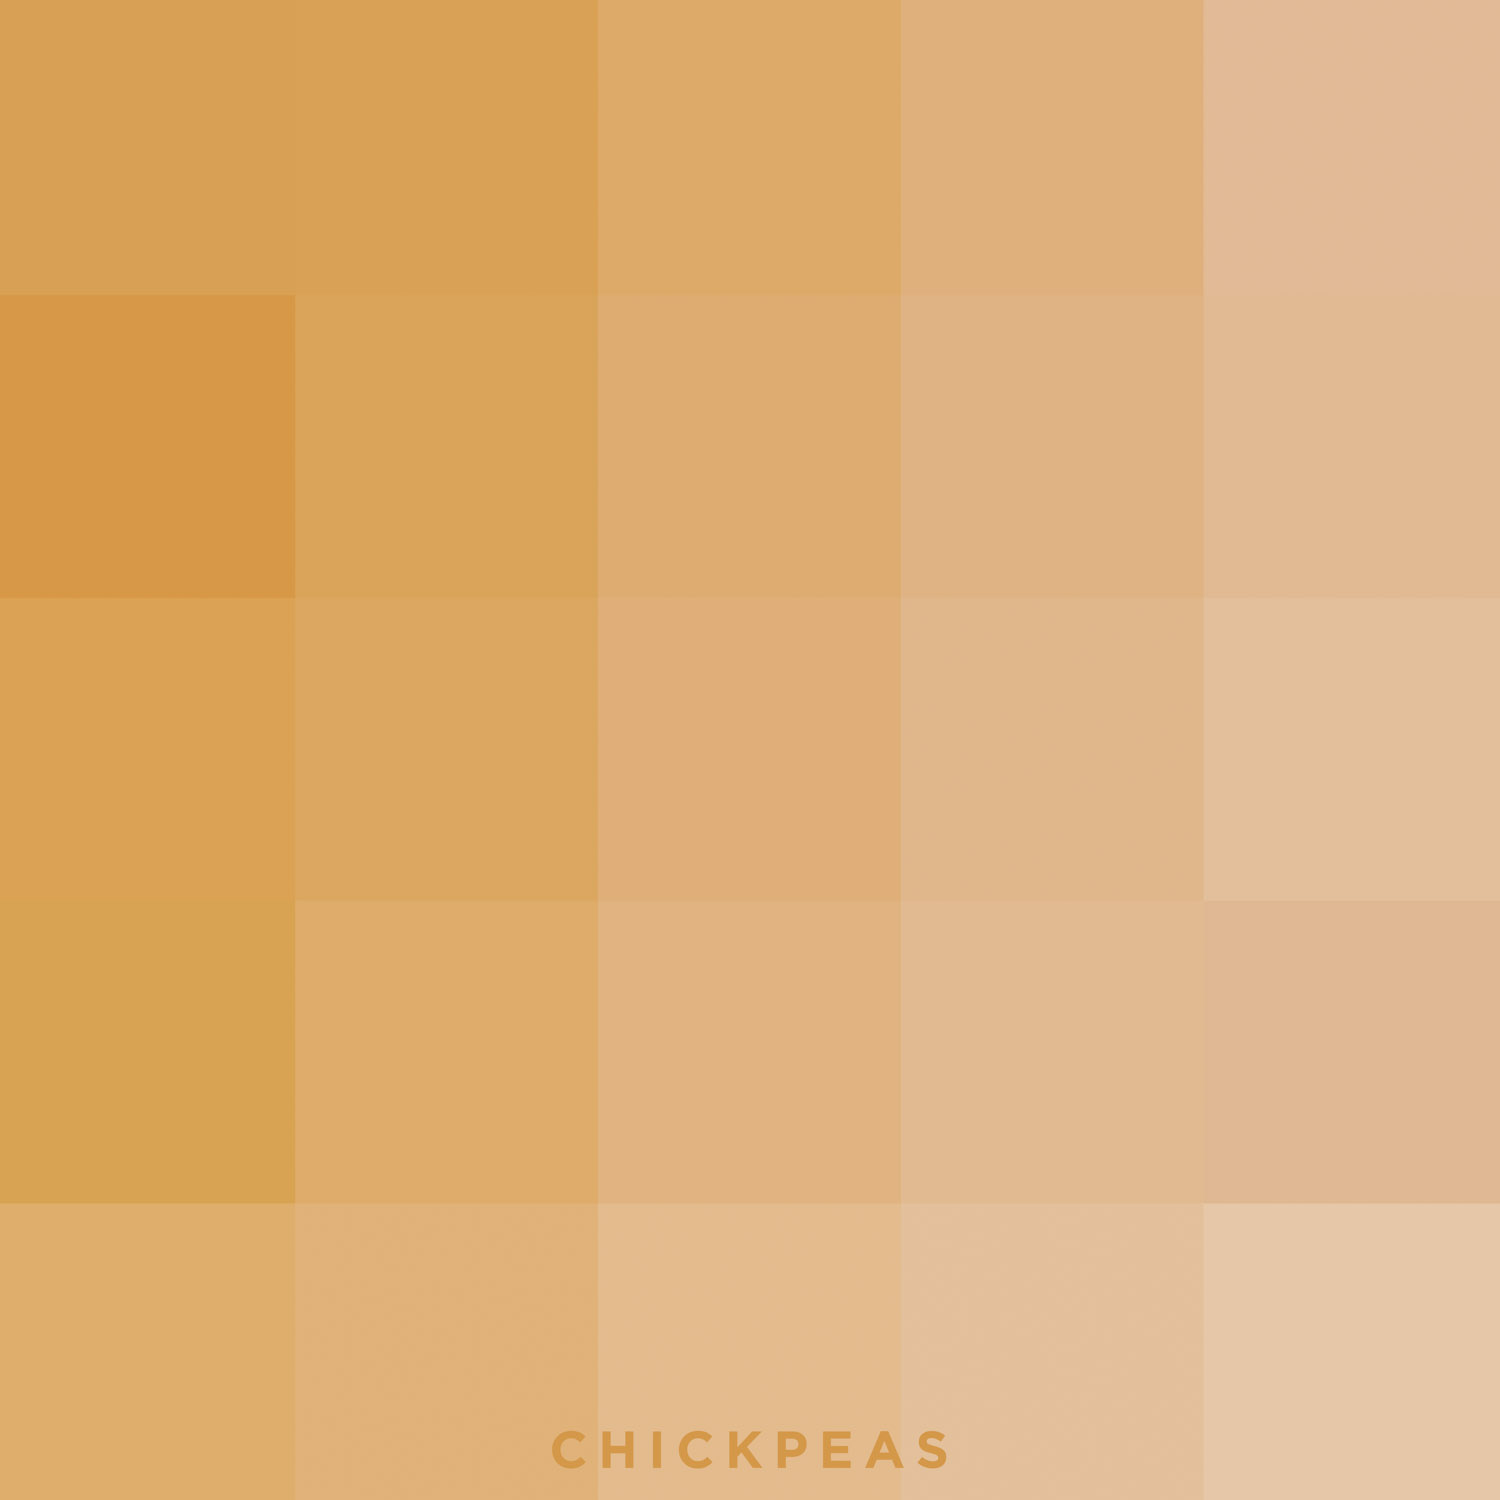 chickpeas